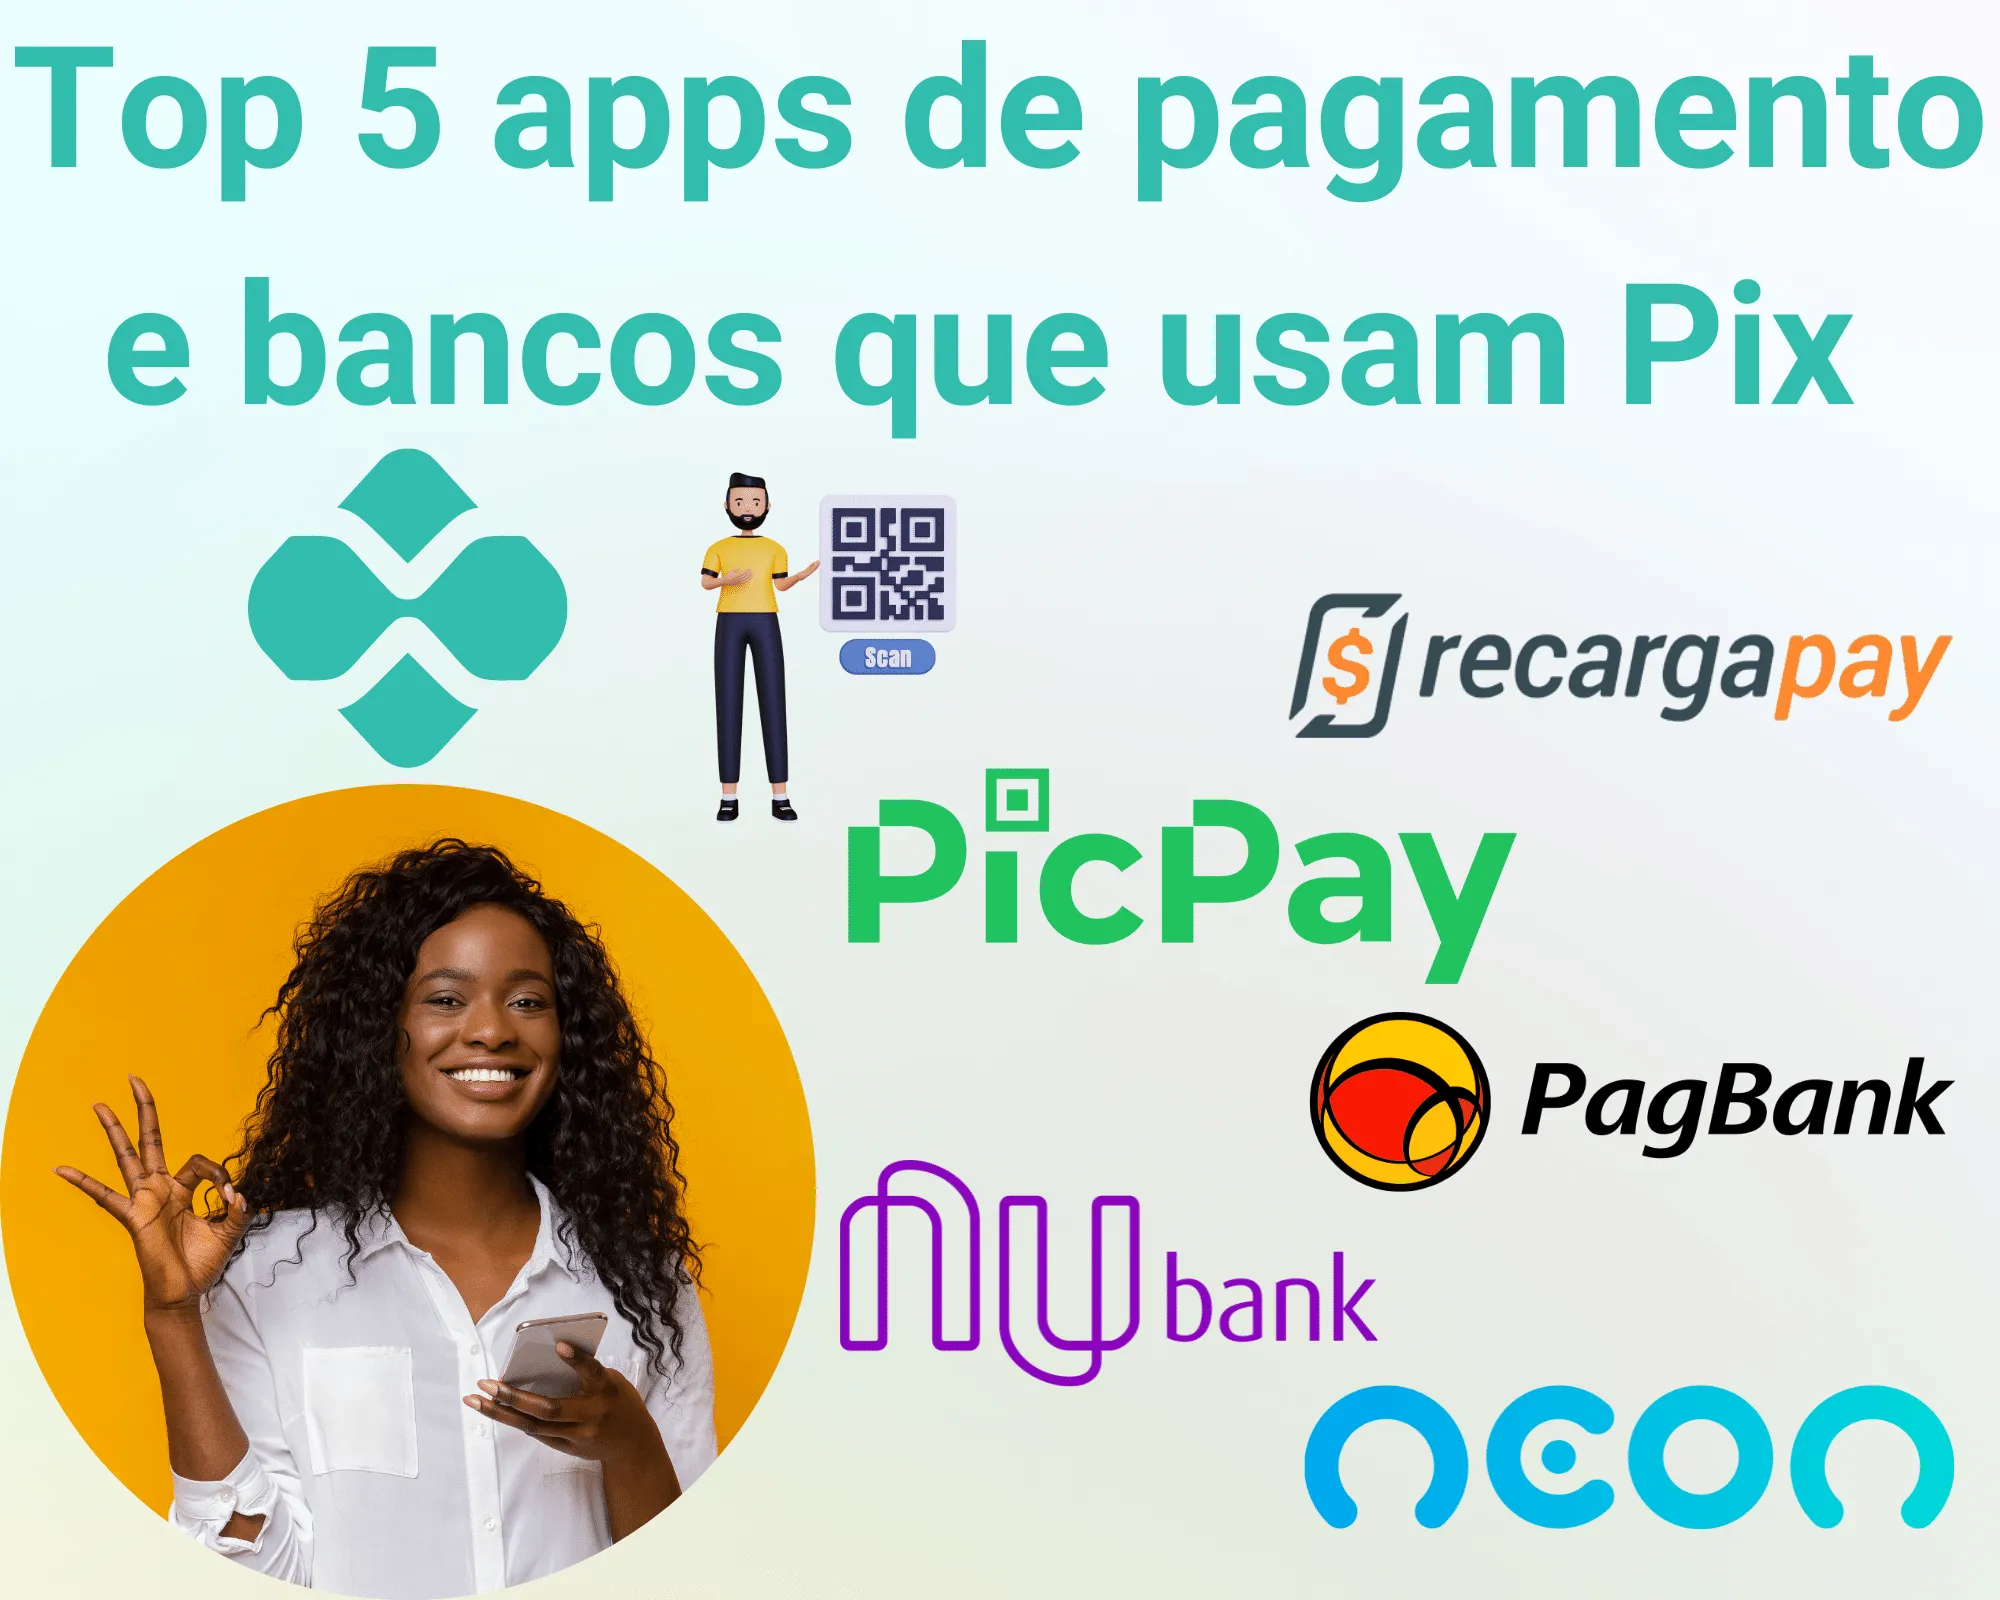 Top 5 apps de pagamento e bancos que usam Pix